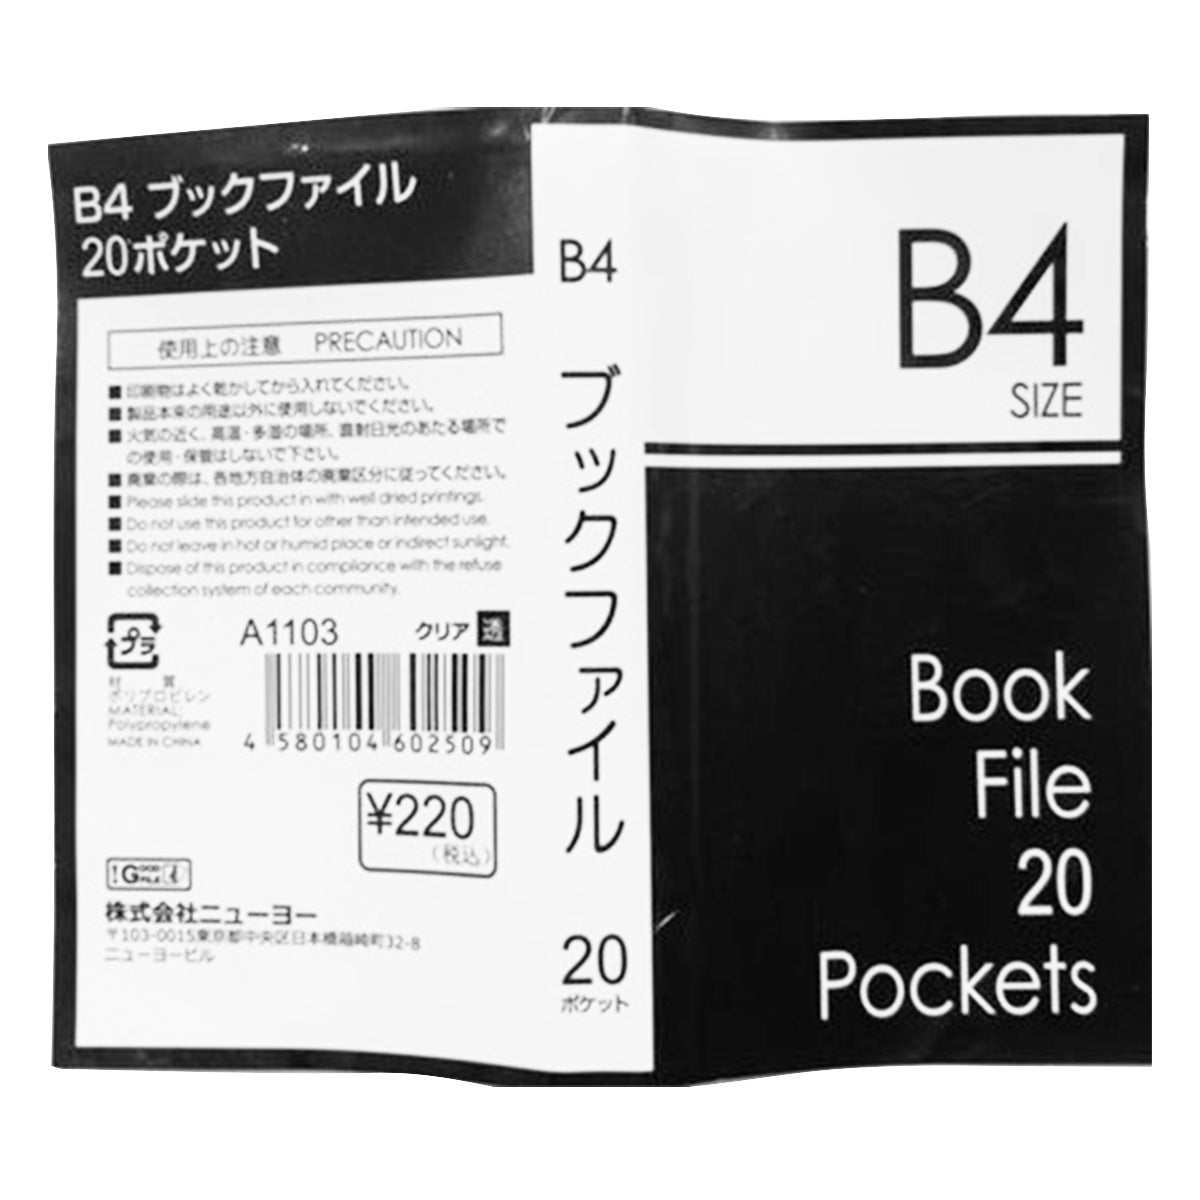 書類ファイル ポケットファイル クリアファイル B4ブックファイル 20P クリア 352005